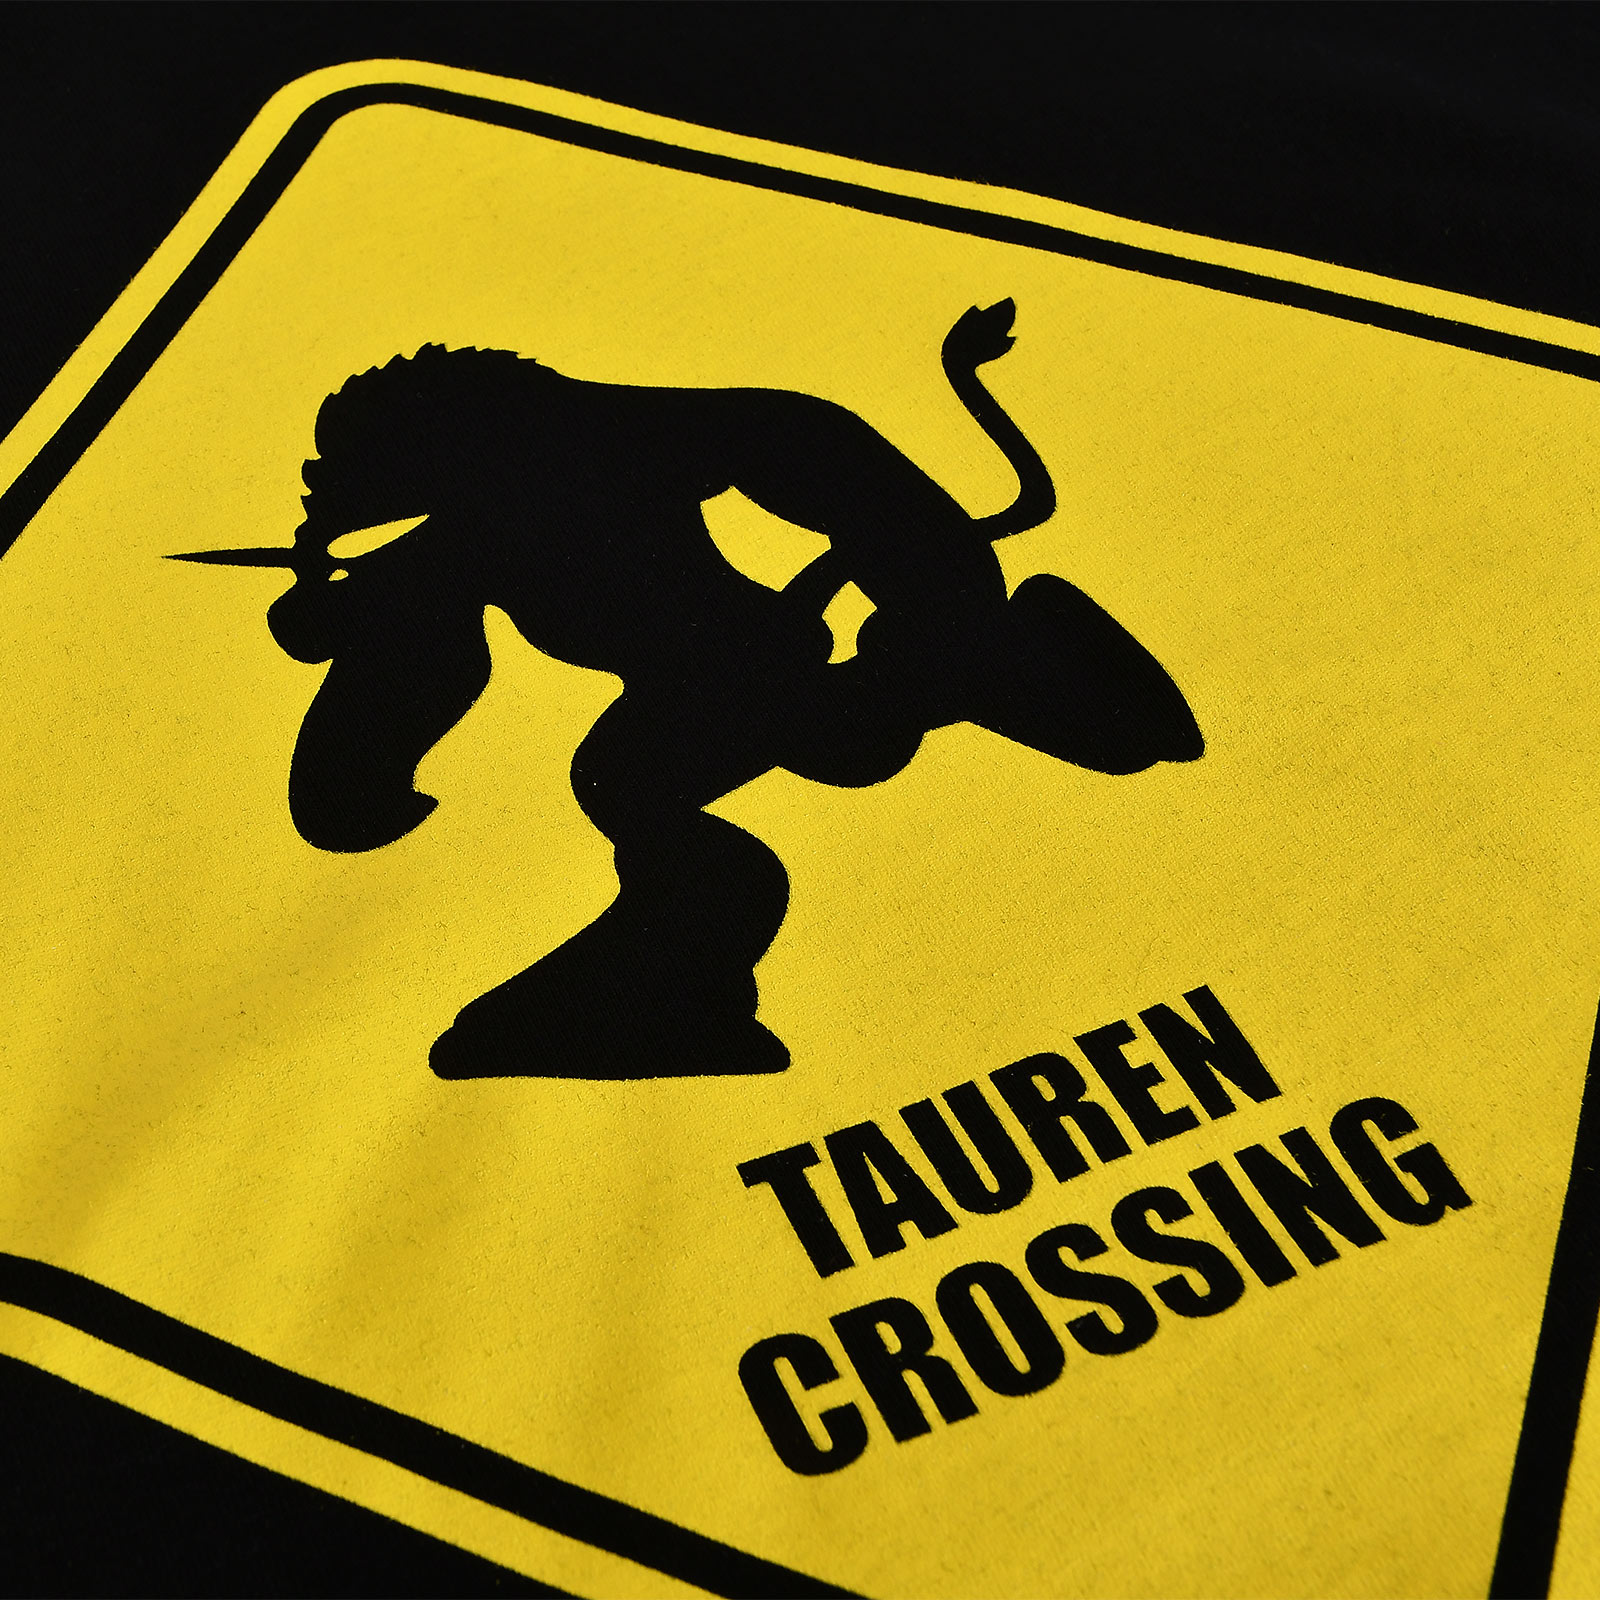 Tauren Crossing T-Shirt für World of Warcraft Fans schwarz